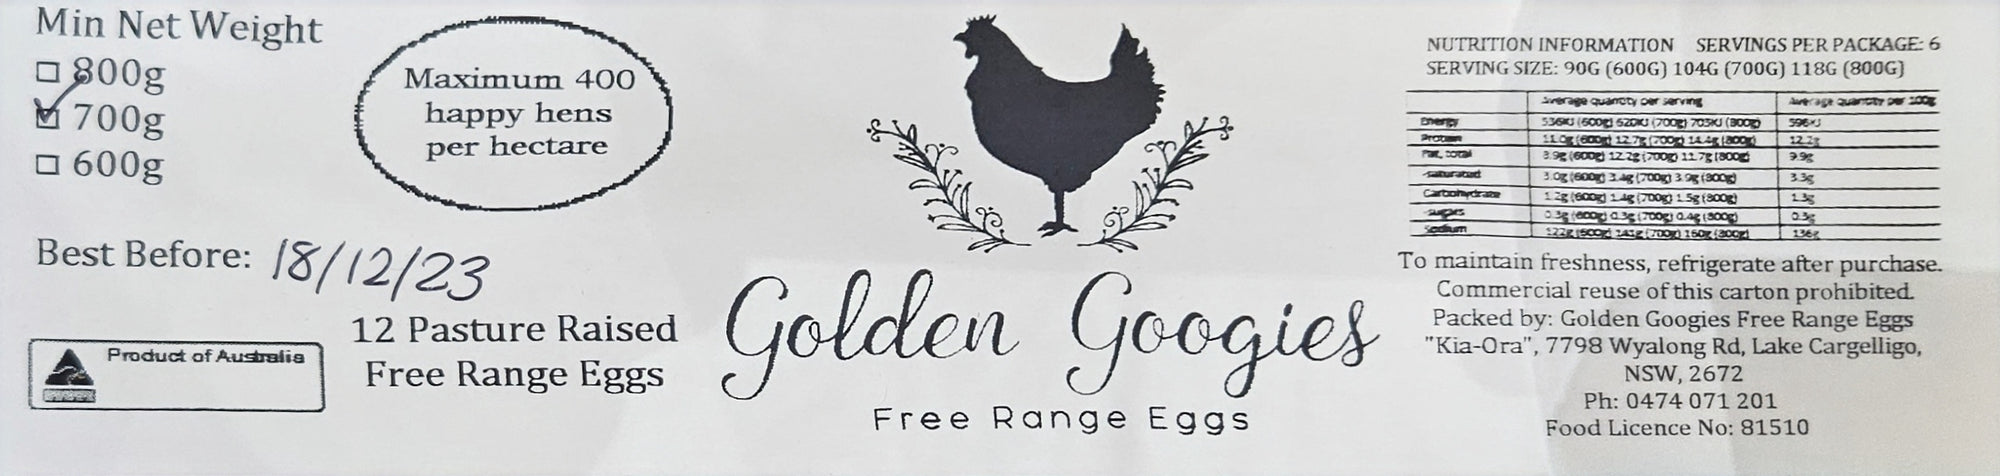 Golden Googies Free Range Eggs 700g